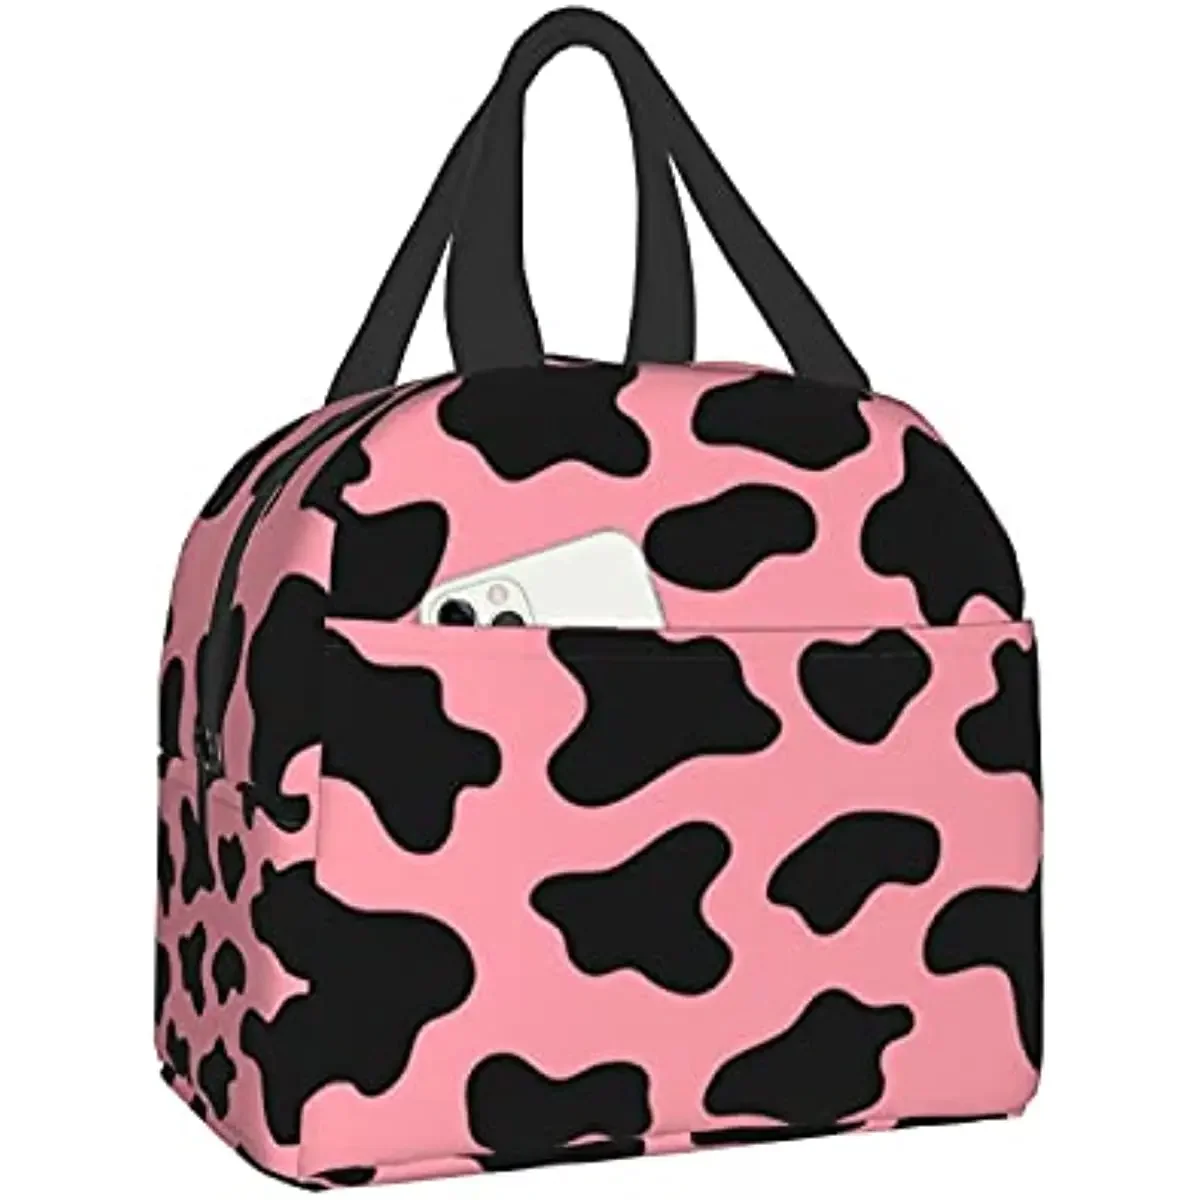 

Изолированная сумка для ланча с коровьим принтом, многоразовый Ланч-бокс для девочек, сумка-тоут для ланча с передним карманом для девочек-подростков